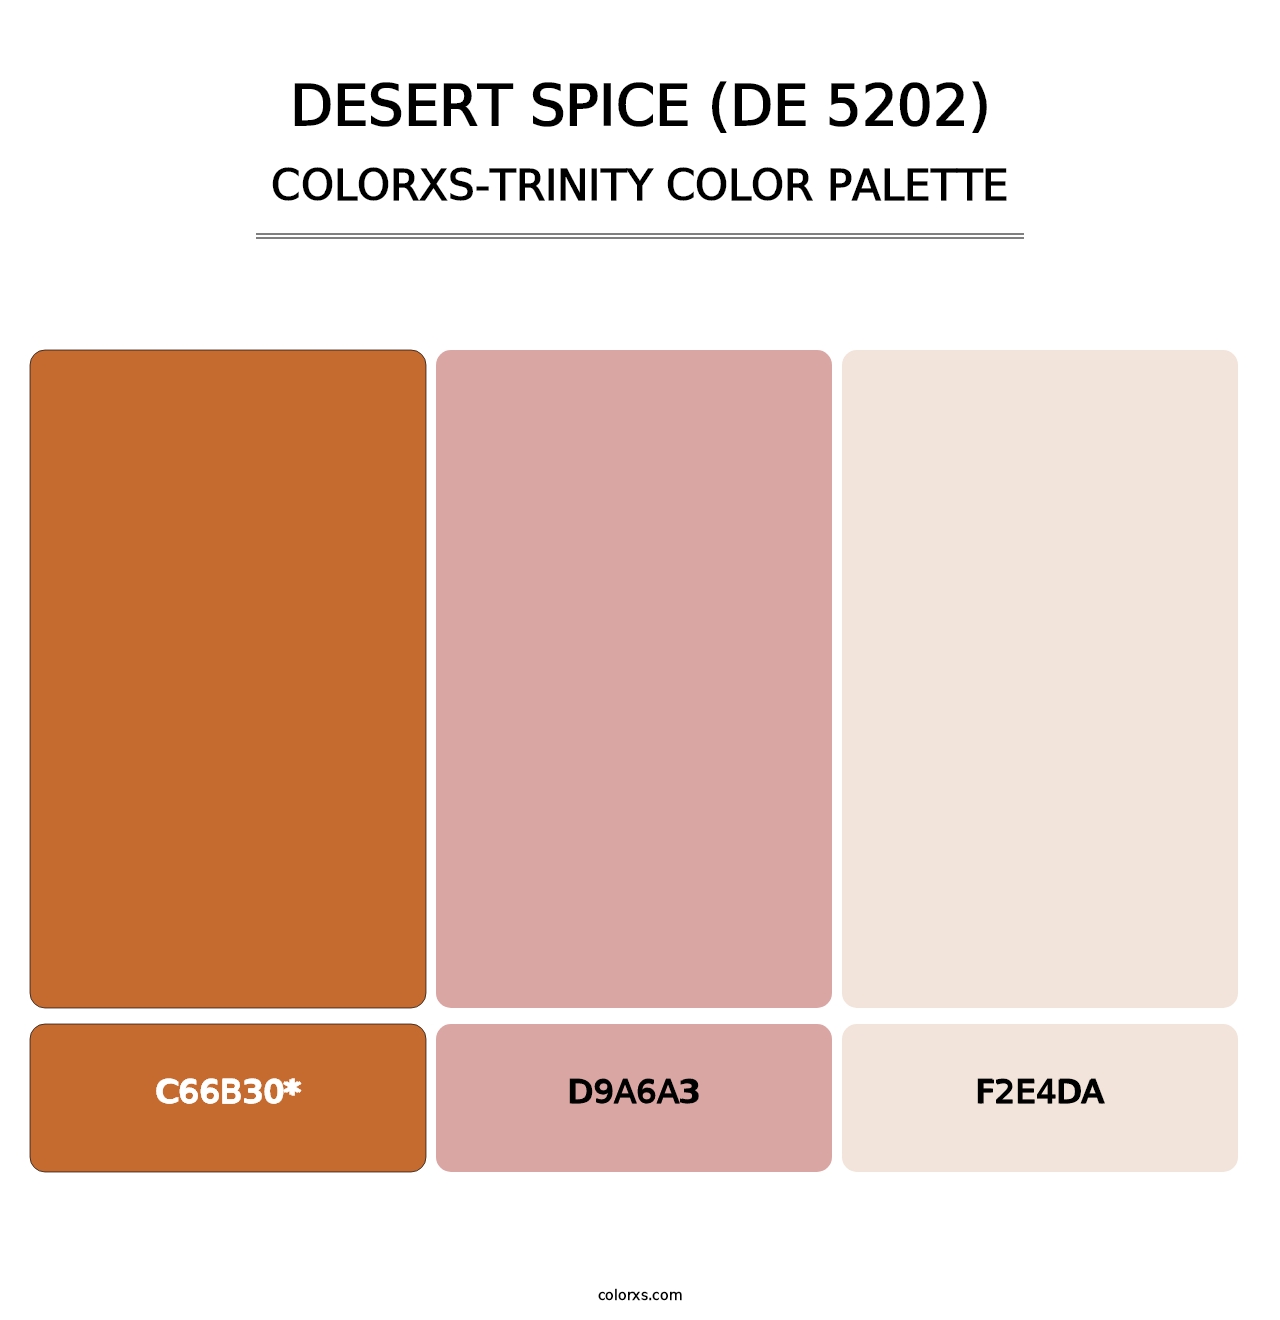 Desert Spice (DE 5202) - Colorxs Trinity Palette